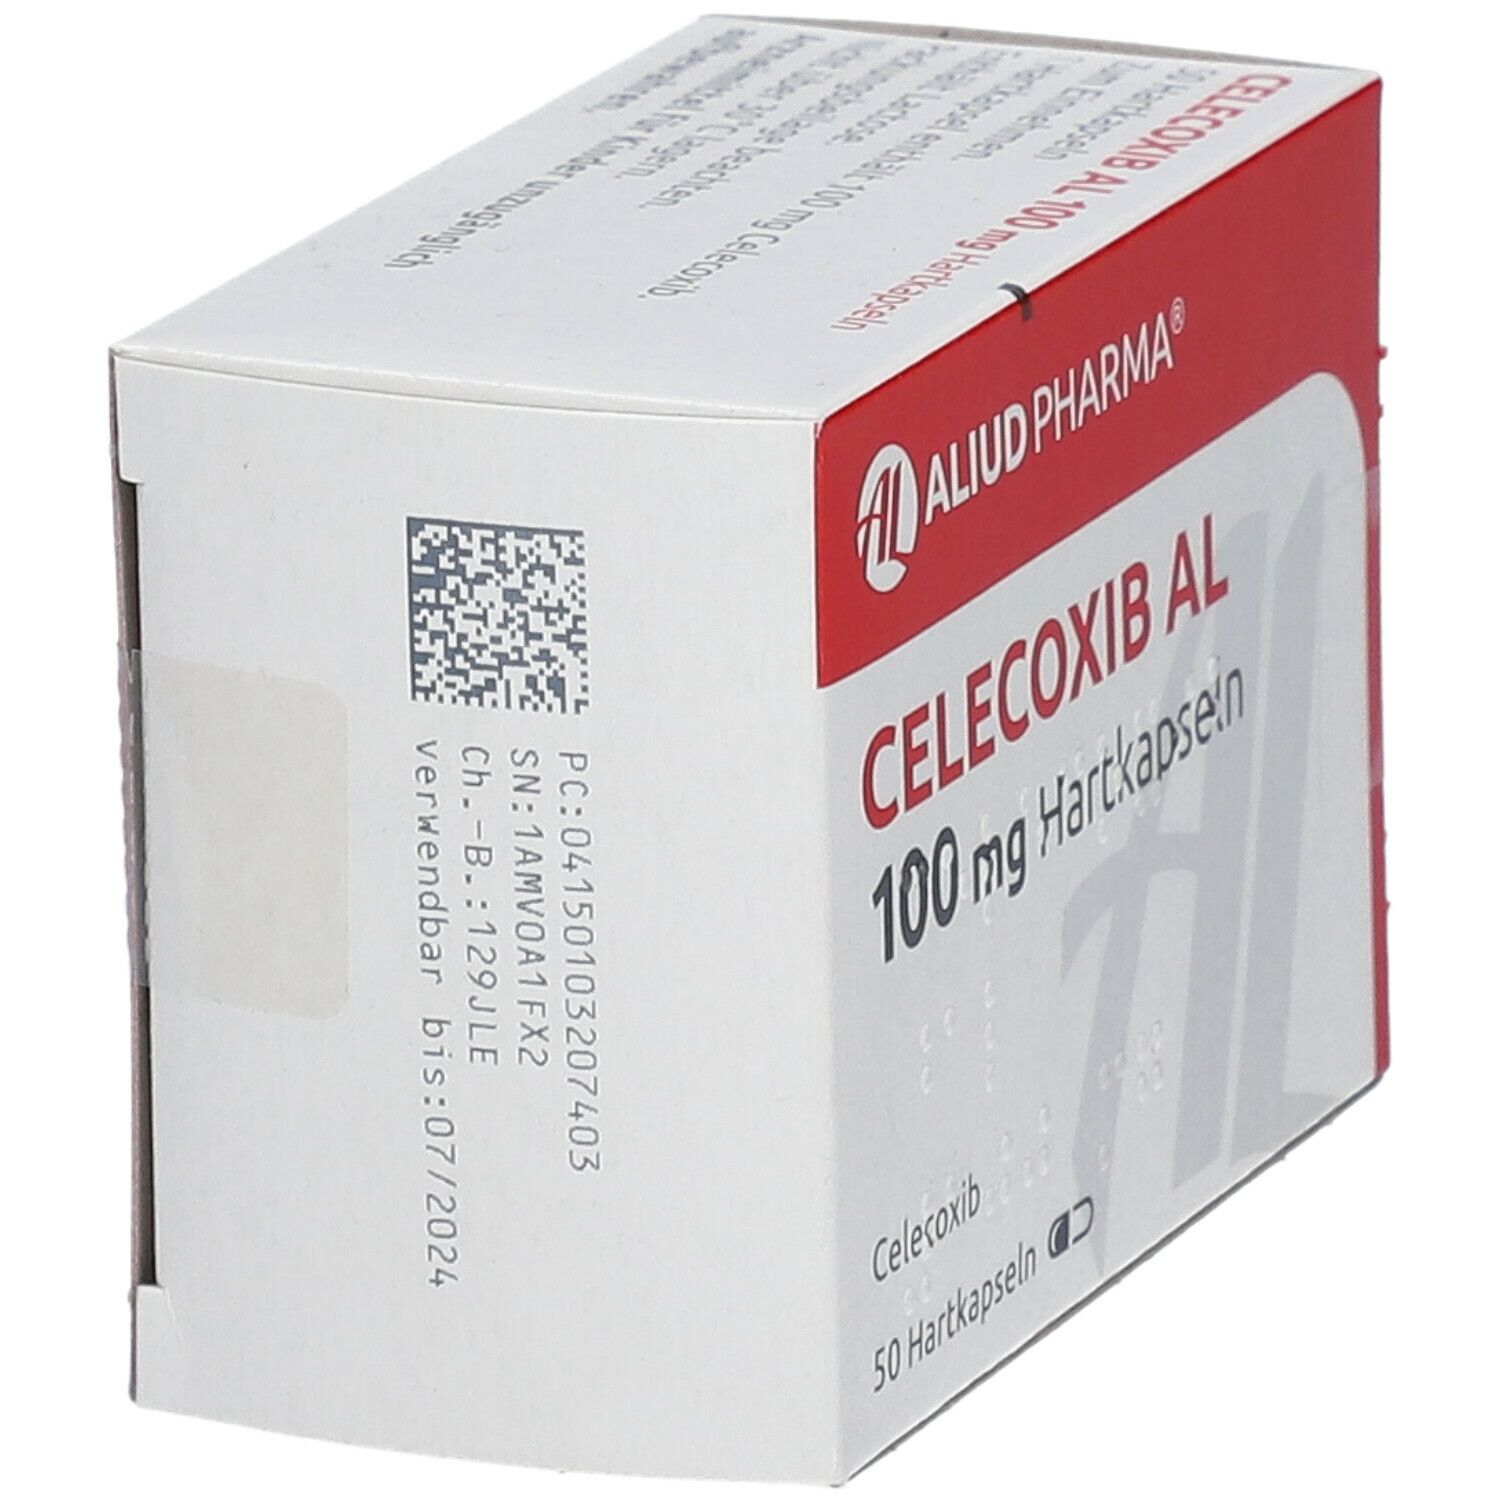 Celecoxib AL 100 mg